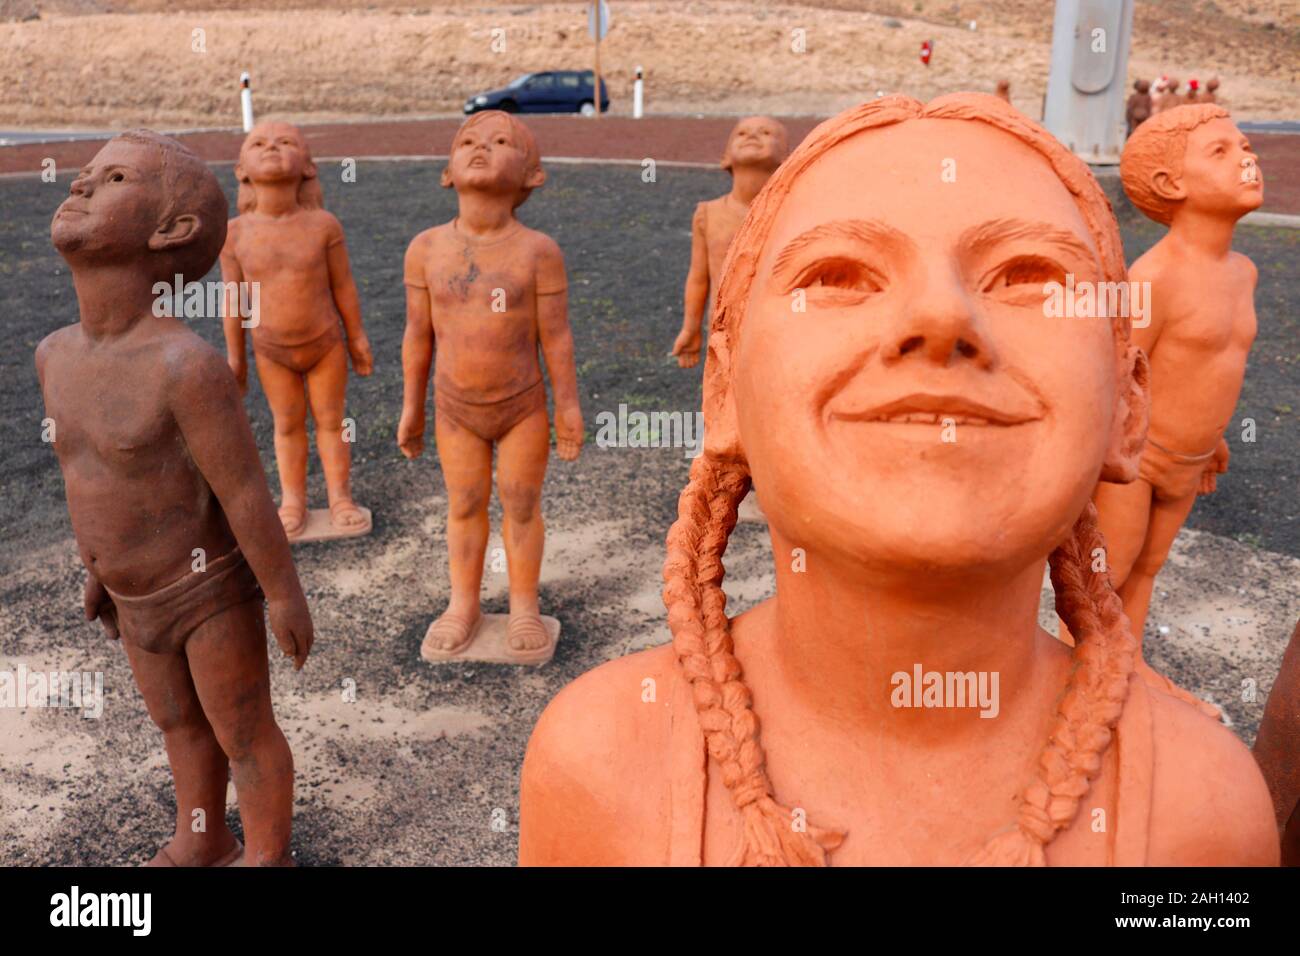 Impressionen: die Skulpturen-Installation "Caminos' von Lisbet Fernandez Ramos, Morro Jable Fuerteventura Isole Kanarische, Spanien/ Fuerteventura, Foto Stock